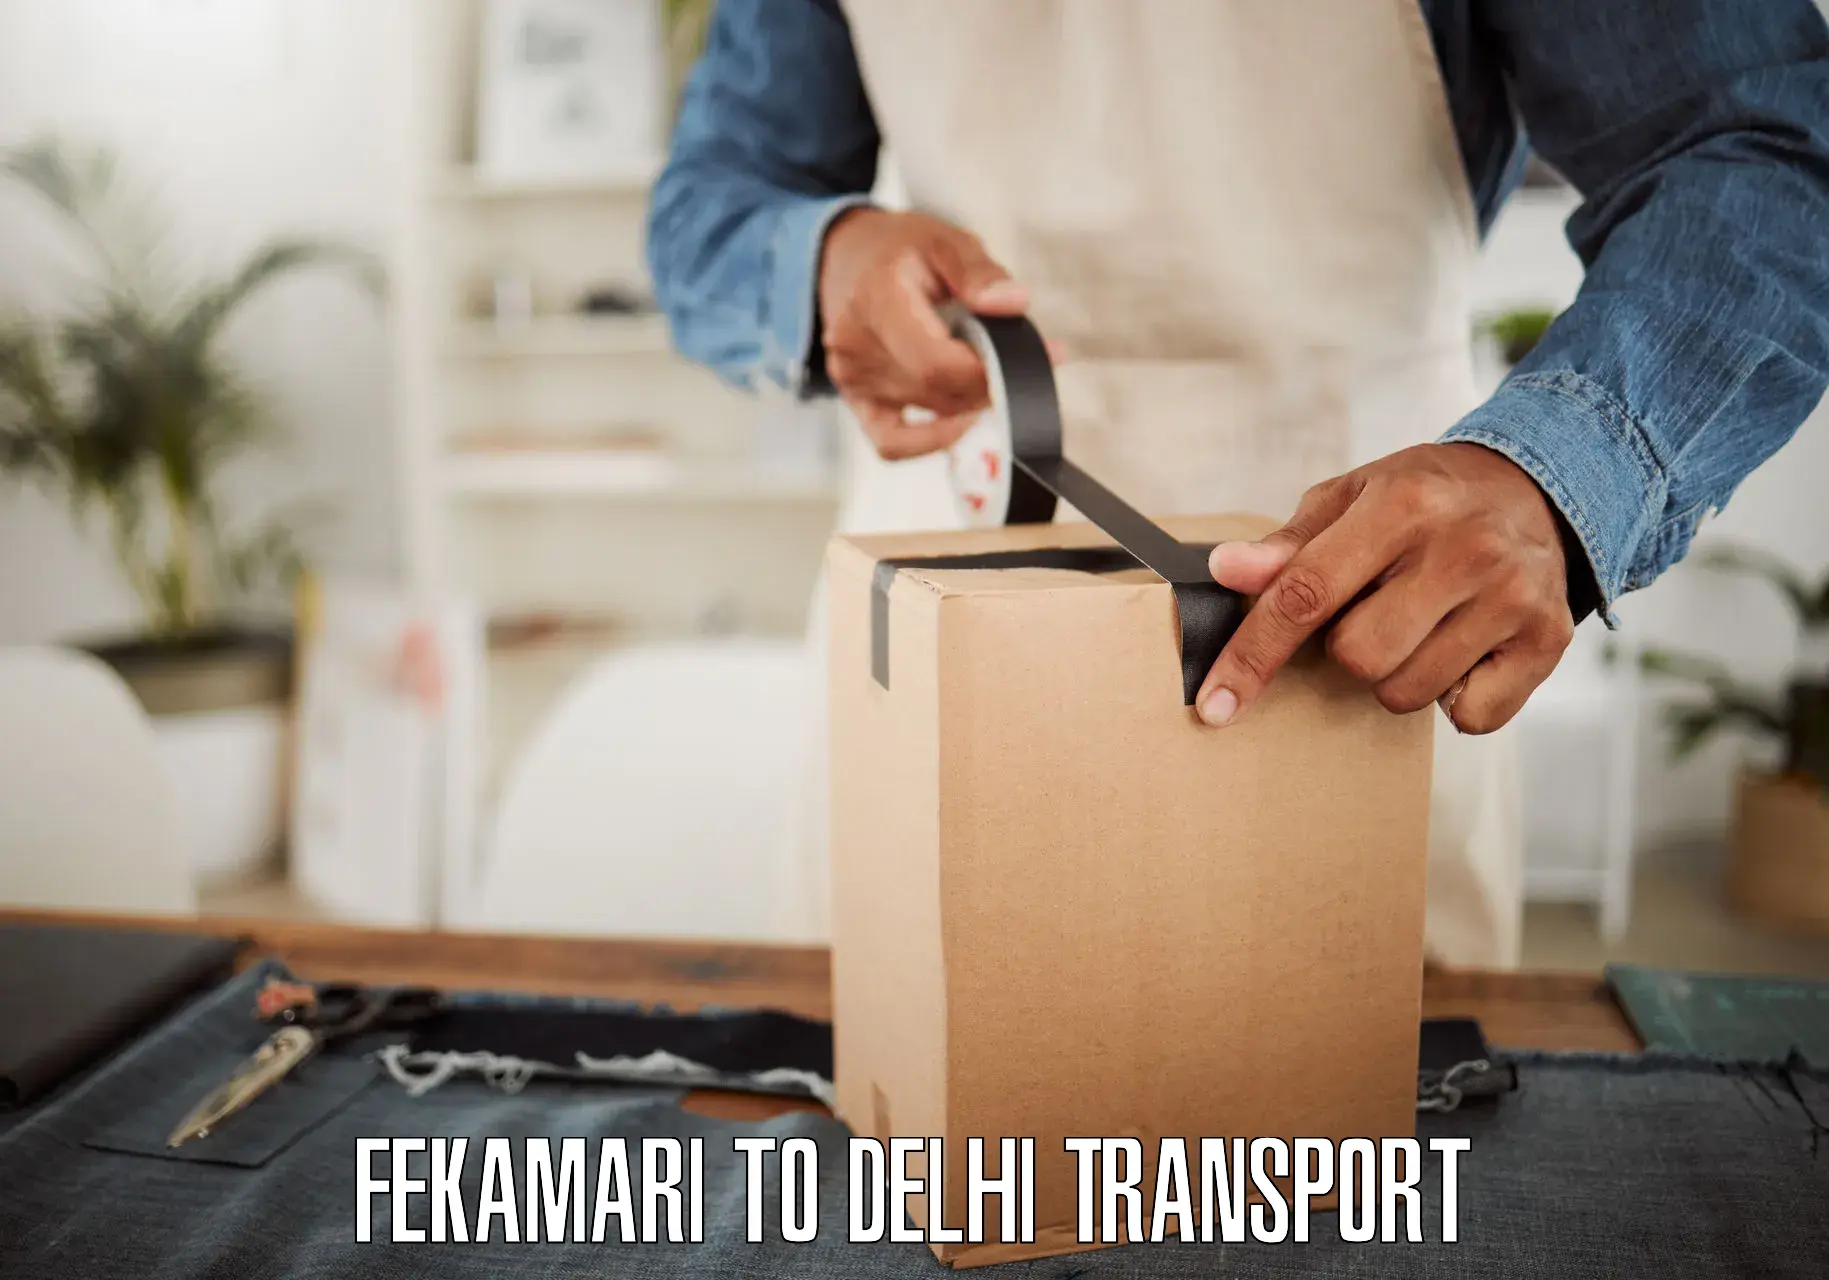 Domestic transport services Fekamari to NIT Delhi